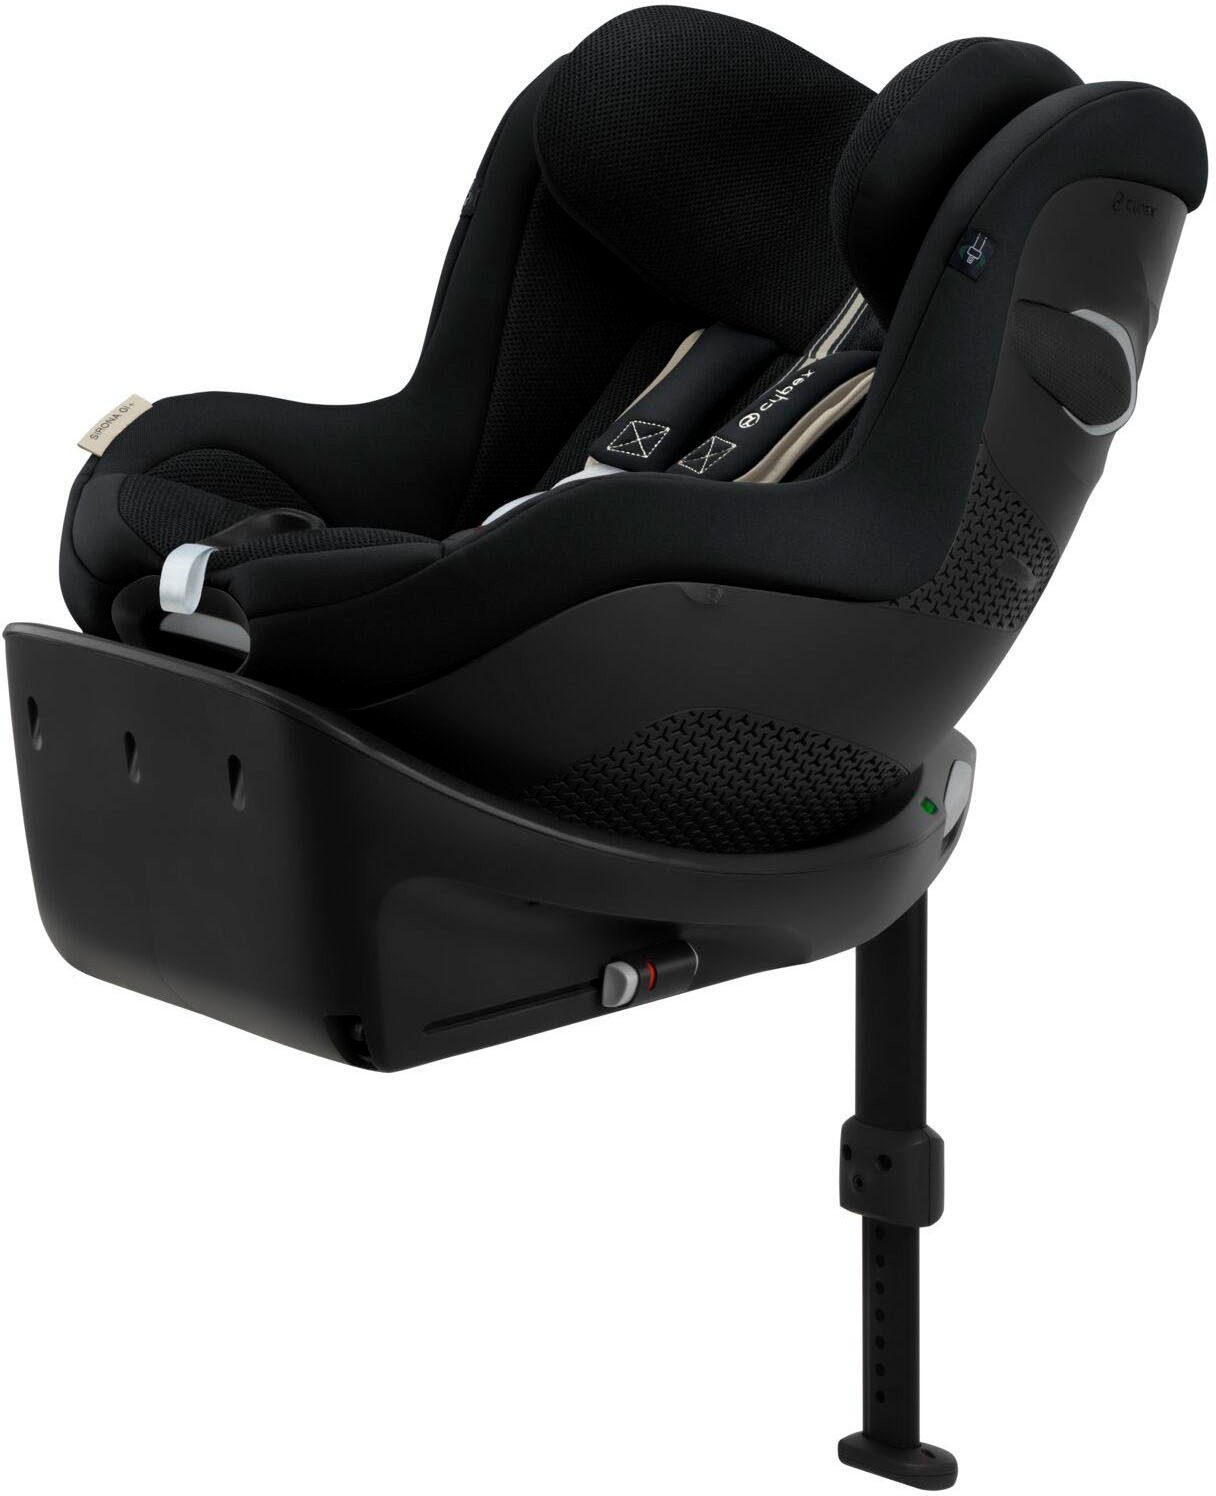 Cybex Solution G I-Fix Plus Kindersitz 15-50 kg Ocean Blue Plus